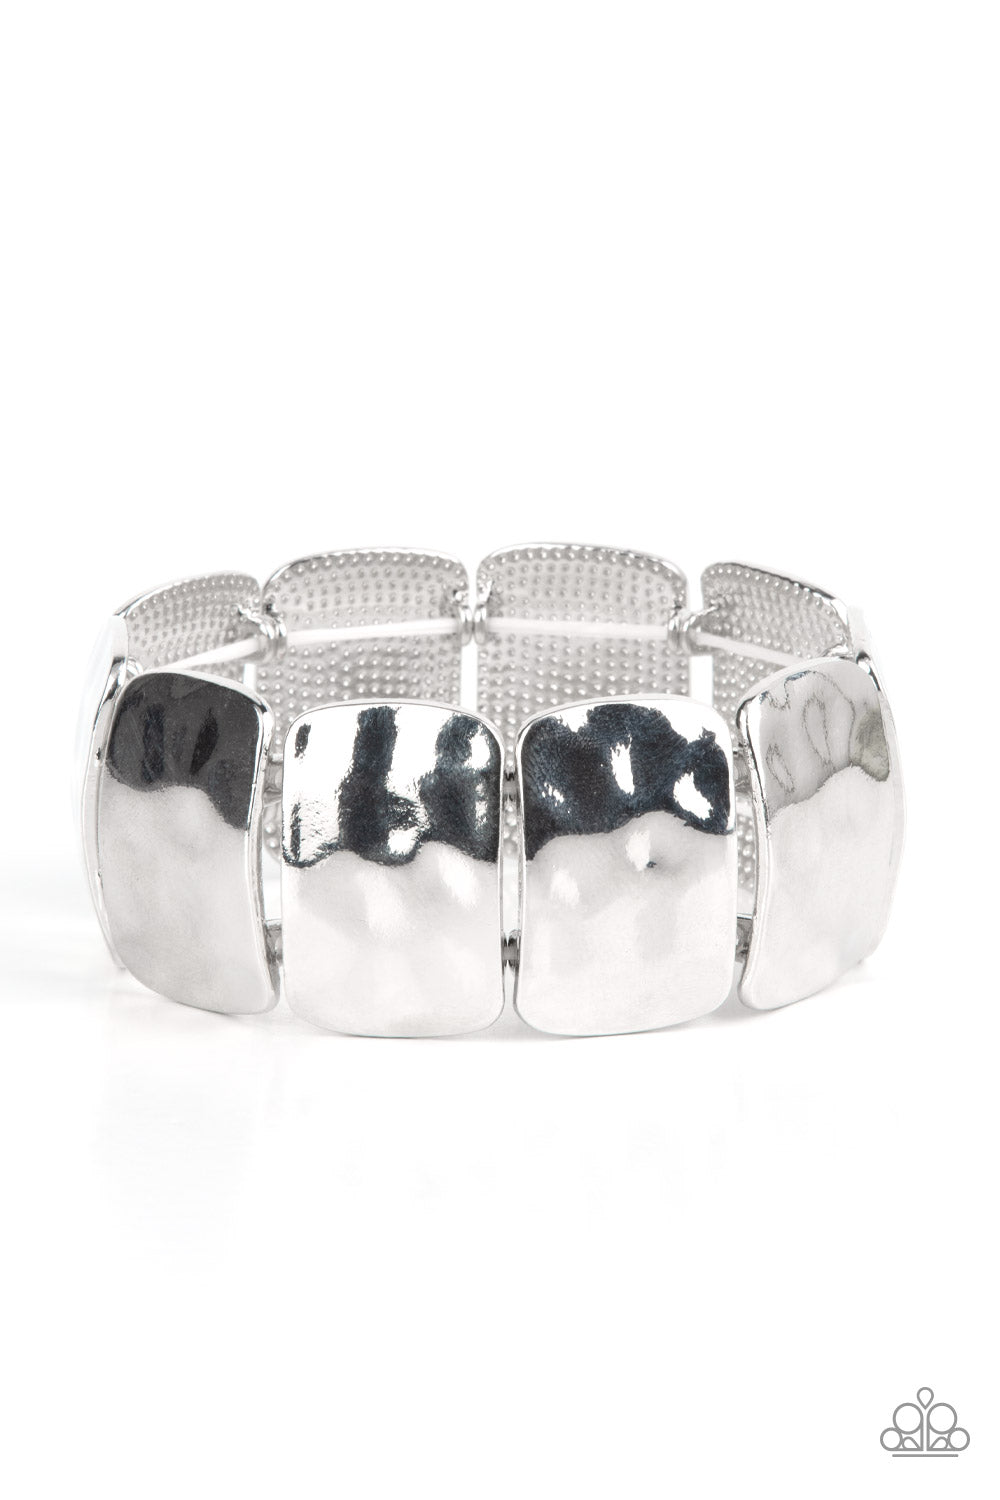 Molten Maverick - Silver bracelet